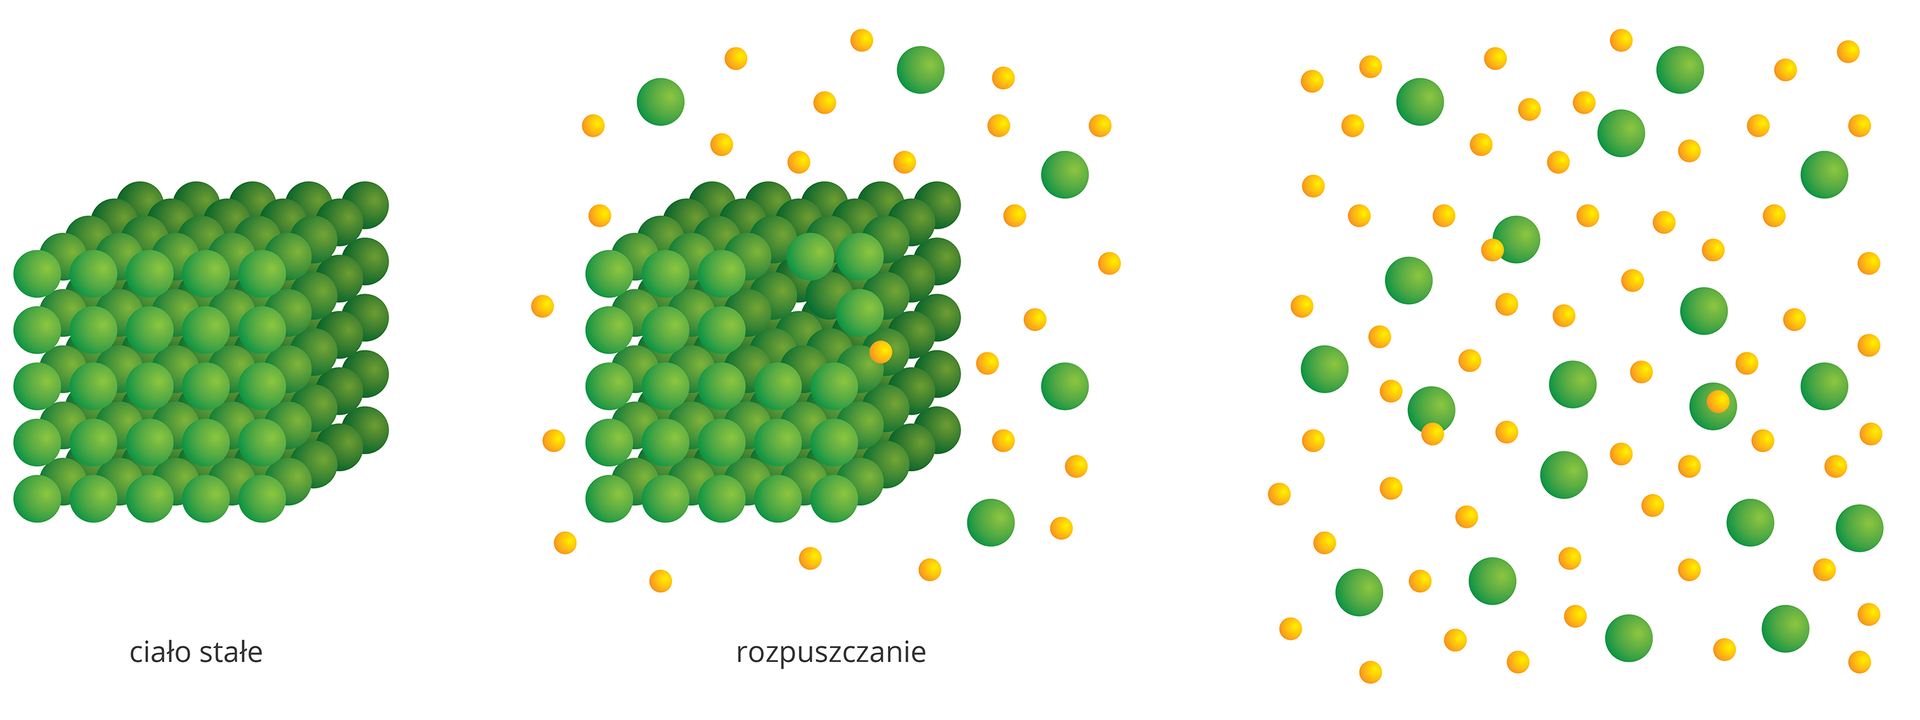 Ilustracja przedstawia schemat rozpuszczania ciała stałego w rozpuszczalniku. Składa się z trzech rysunków. Po lewej sześcian składający się z ciasno ułożonych obok siebie zielonych kulek symbolizujący ciało stałe i opatrzony takim właśnie podpisem. Pośrodku ten sam sześcian otoczony pojedynczymi, mniejszymi żółtymi kulkami symbolizującymi cząstki rozpuszczalnika. Od sześcianu odrywają się pojedyncze cząstki, a także większe ich skupiska. Podpis pod rysunkiem: Rozpuszczanie. Rysunek po prawej stronie prezentuje stan po całkowitym rozpuszczeniu substancji stałej. Mniejsze cząstki rozpuszczalnika i większe cząstki substancji rozpuszczonej są ze sobą równomiernie wymieszane.